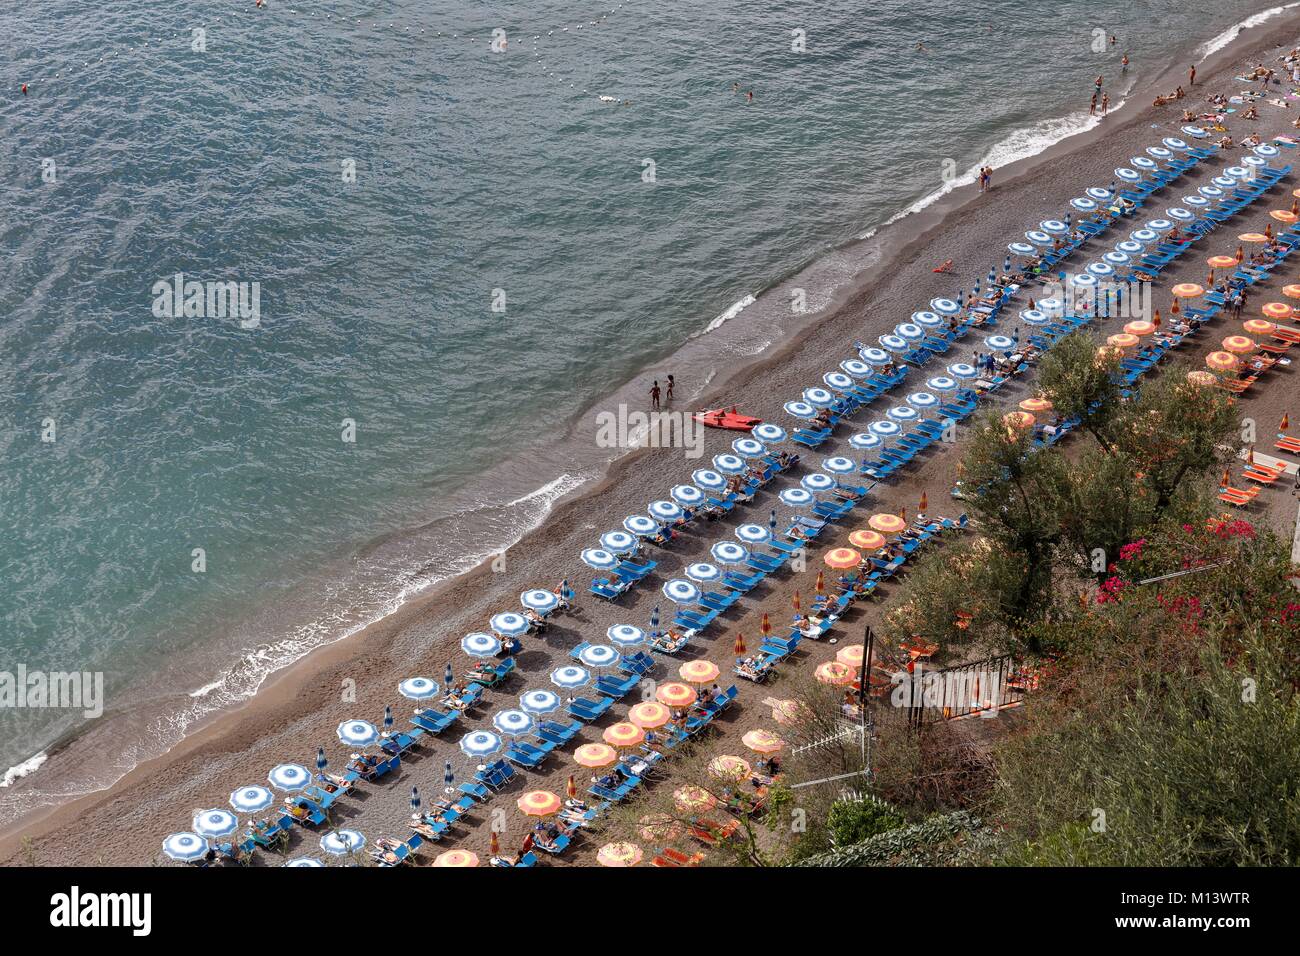 L'Italie, Campanie, Positano, côte amalfitaine inscrite au Patrimoine Mondial de l'UNESCO, Sentiero degli Dei (chemin des dieux), des parasols sur la plage Banque D'Images